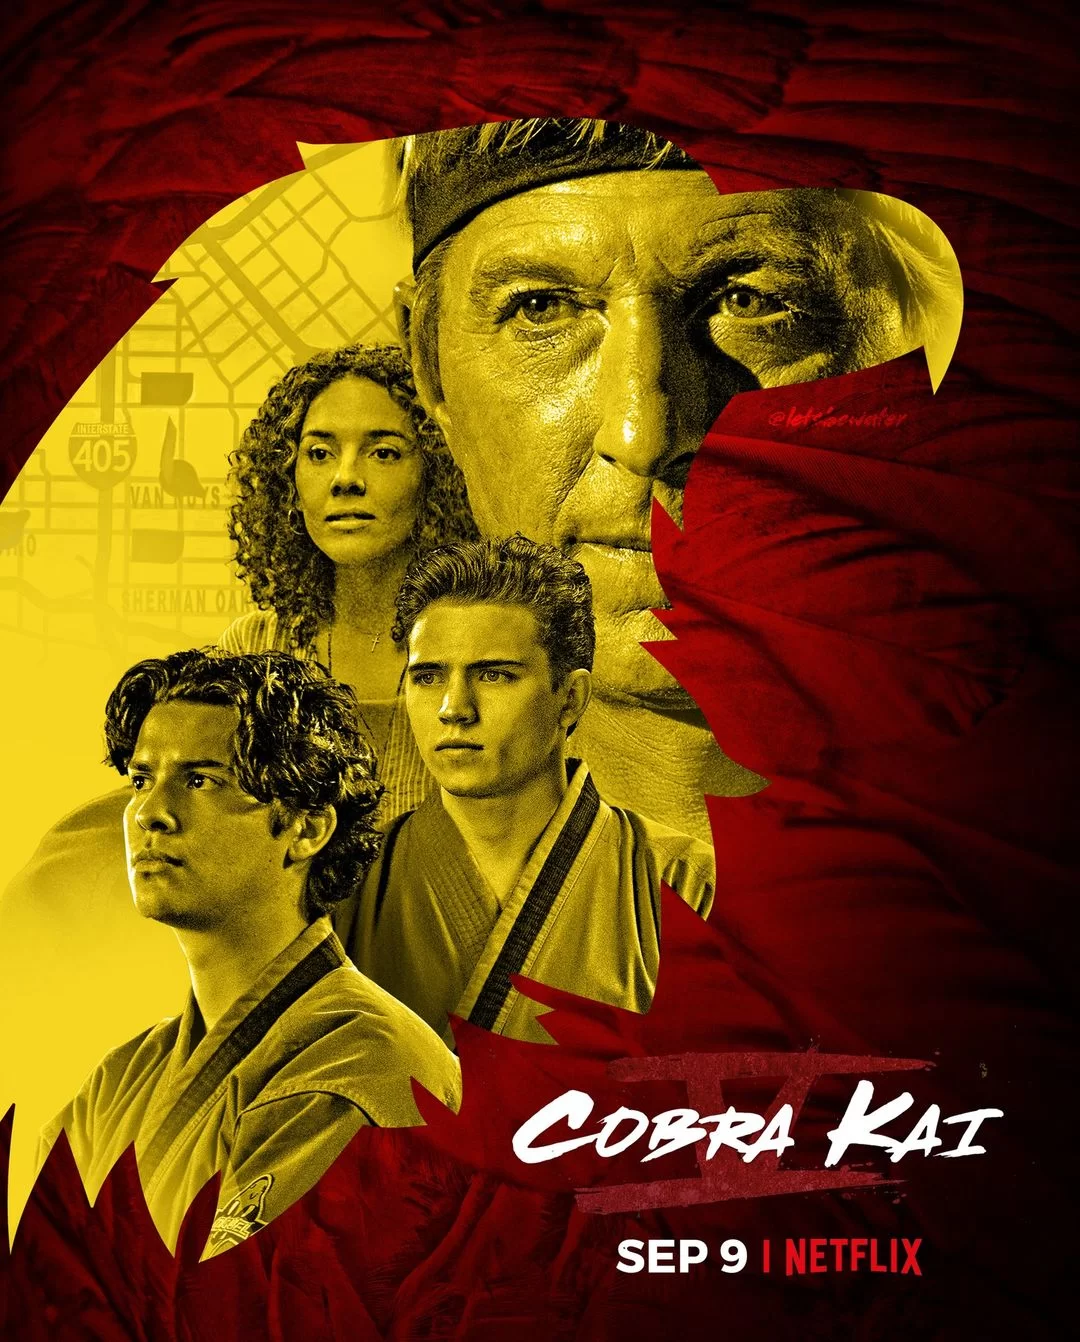 Is Cobra Kai Season 5 (2022) on Netflix